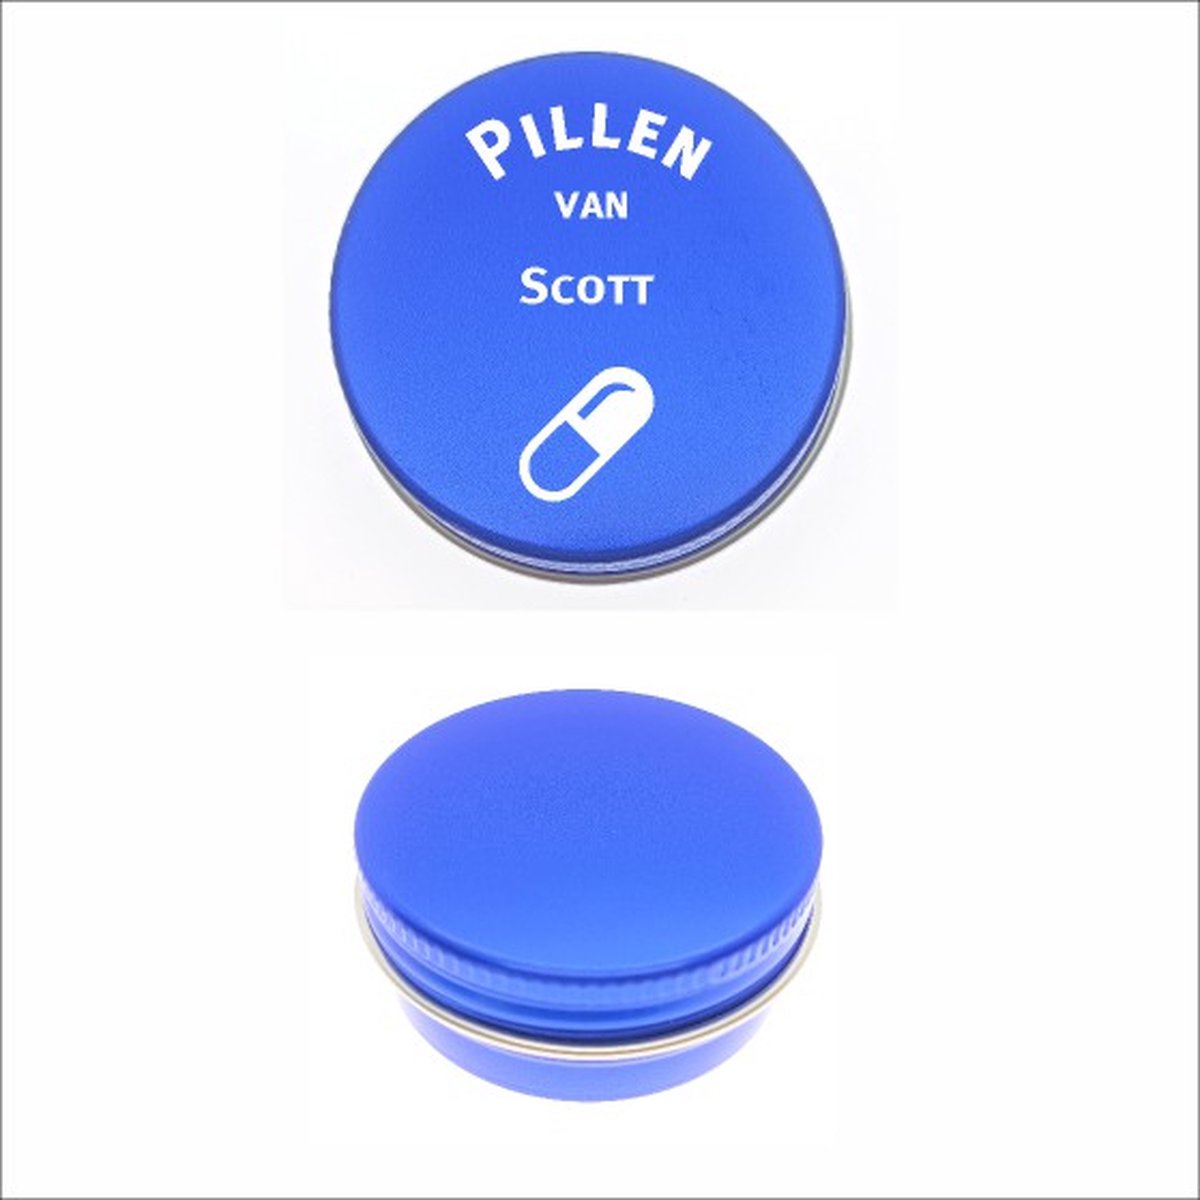 Pillen Blikje Met Naam Gravering - Scott